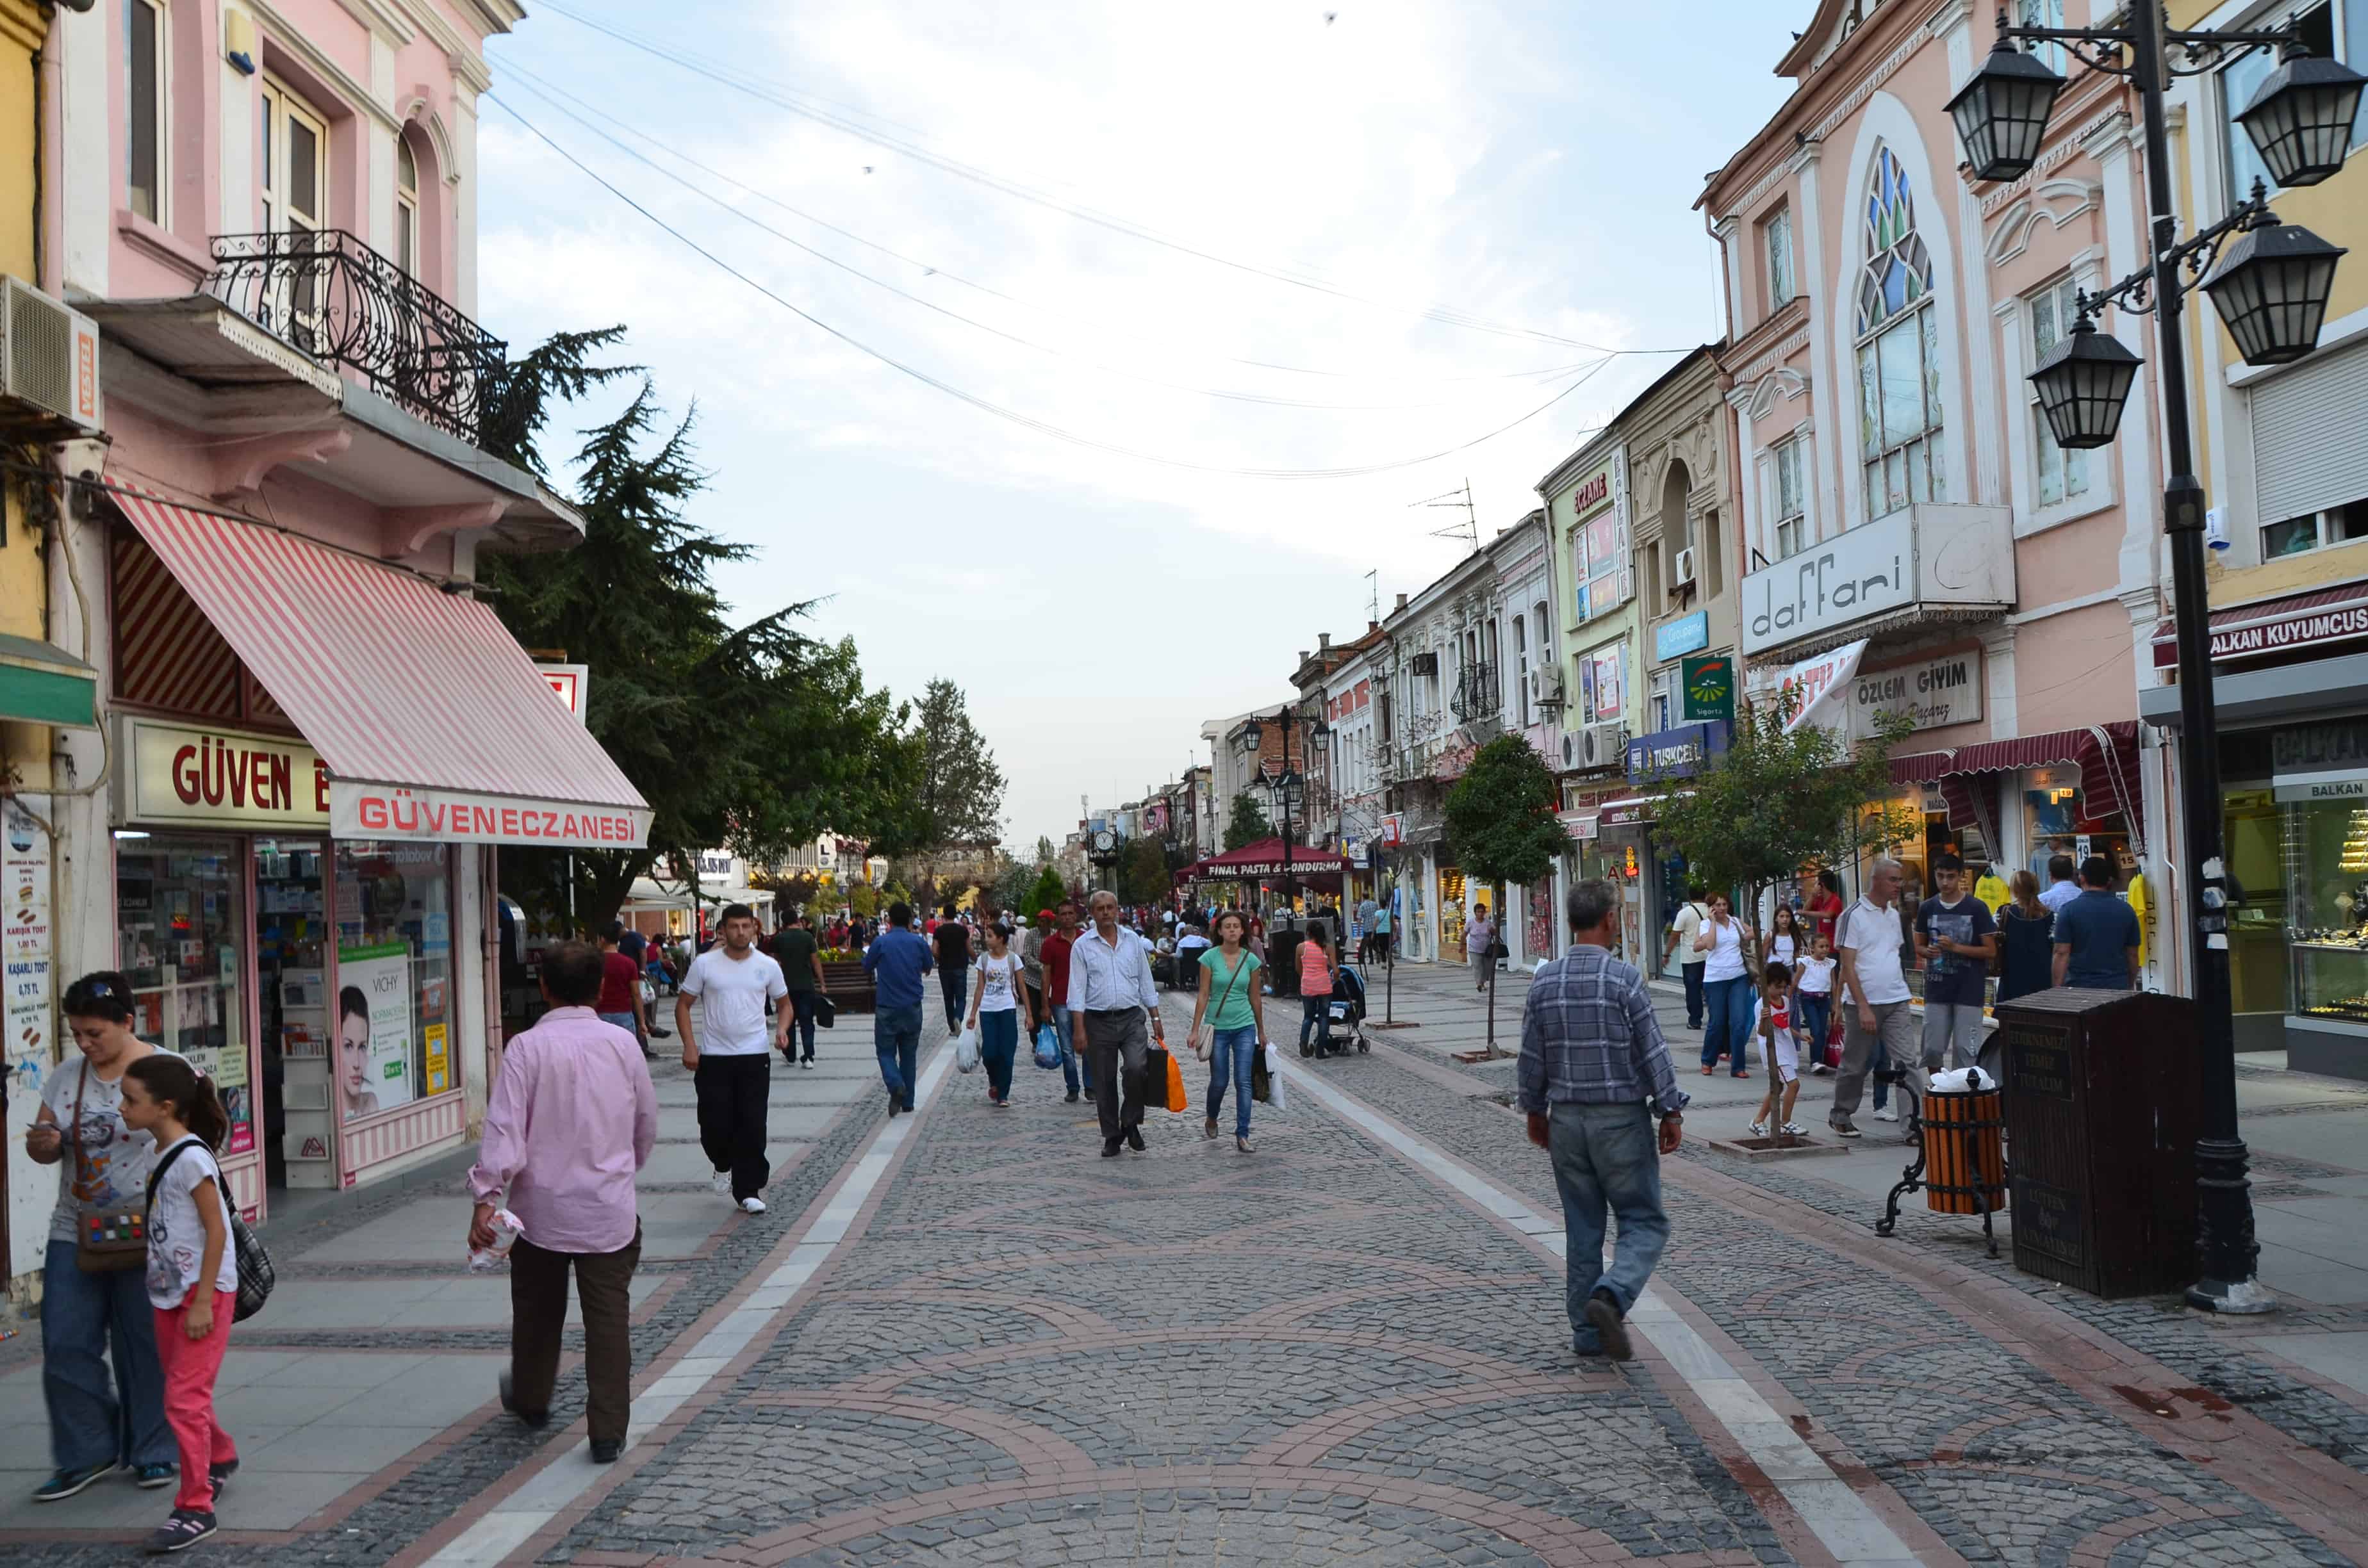 Saraçlar Street in Edirne, Turkey